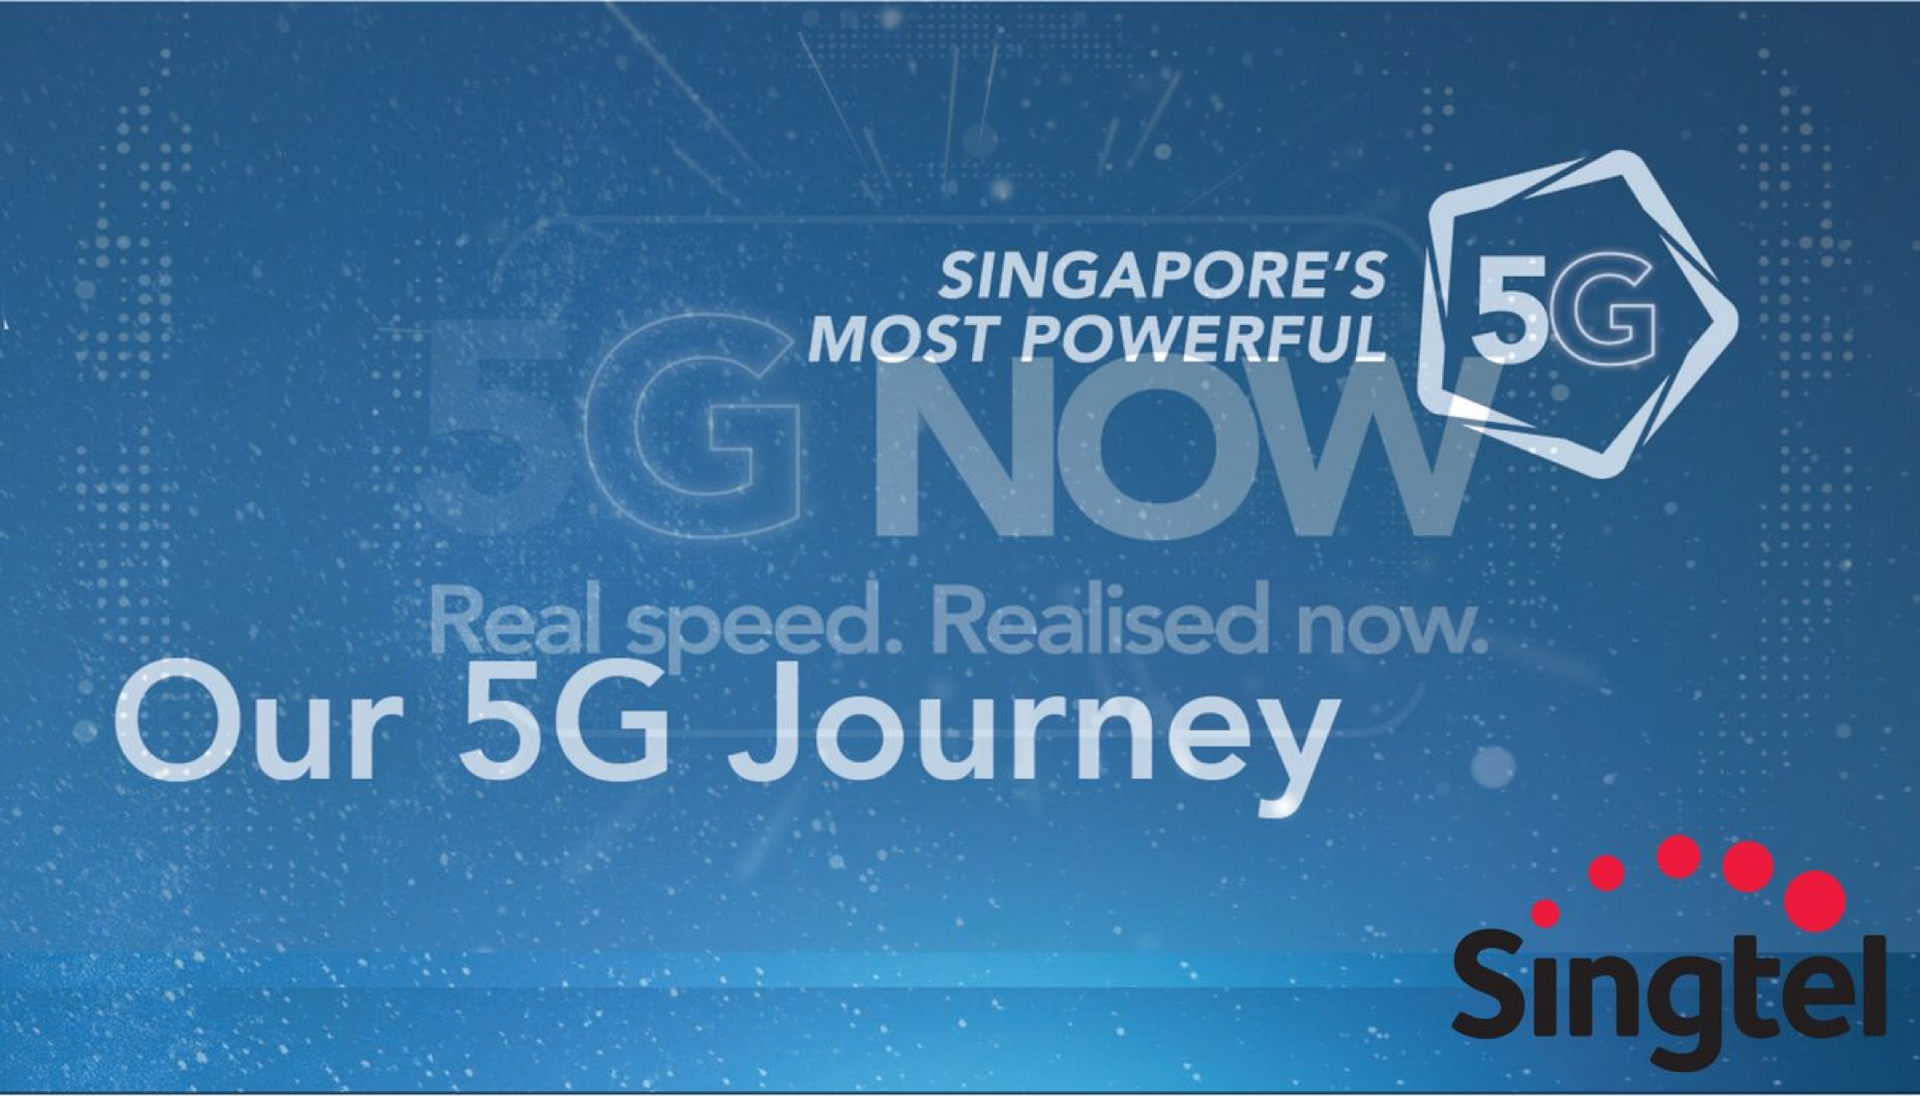 Singapore: quốc gia đầu tiên trên thế giới phủ sóng 5G toàn quốc - Ảnh 1.